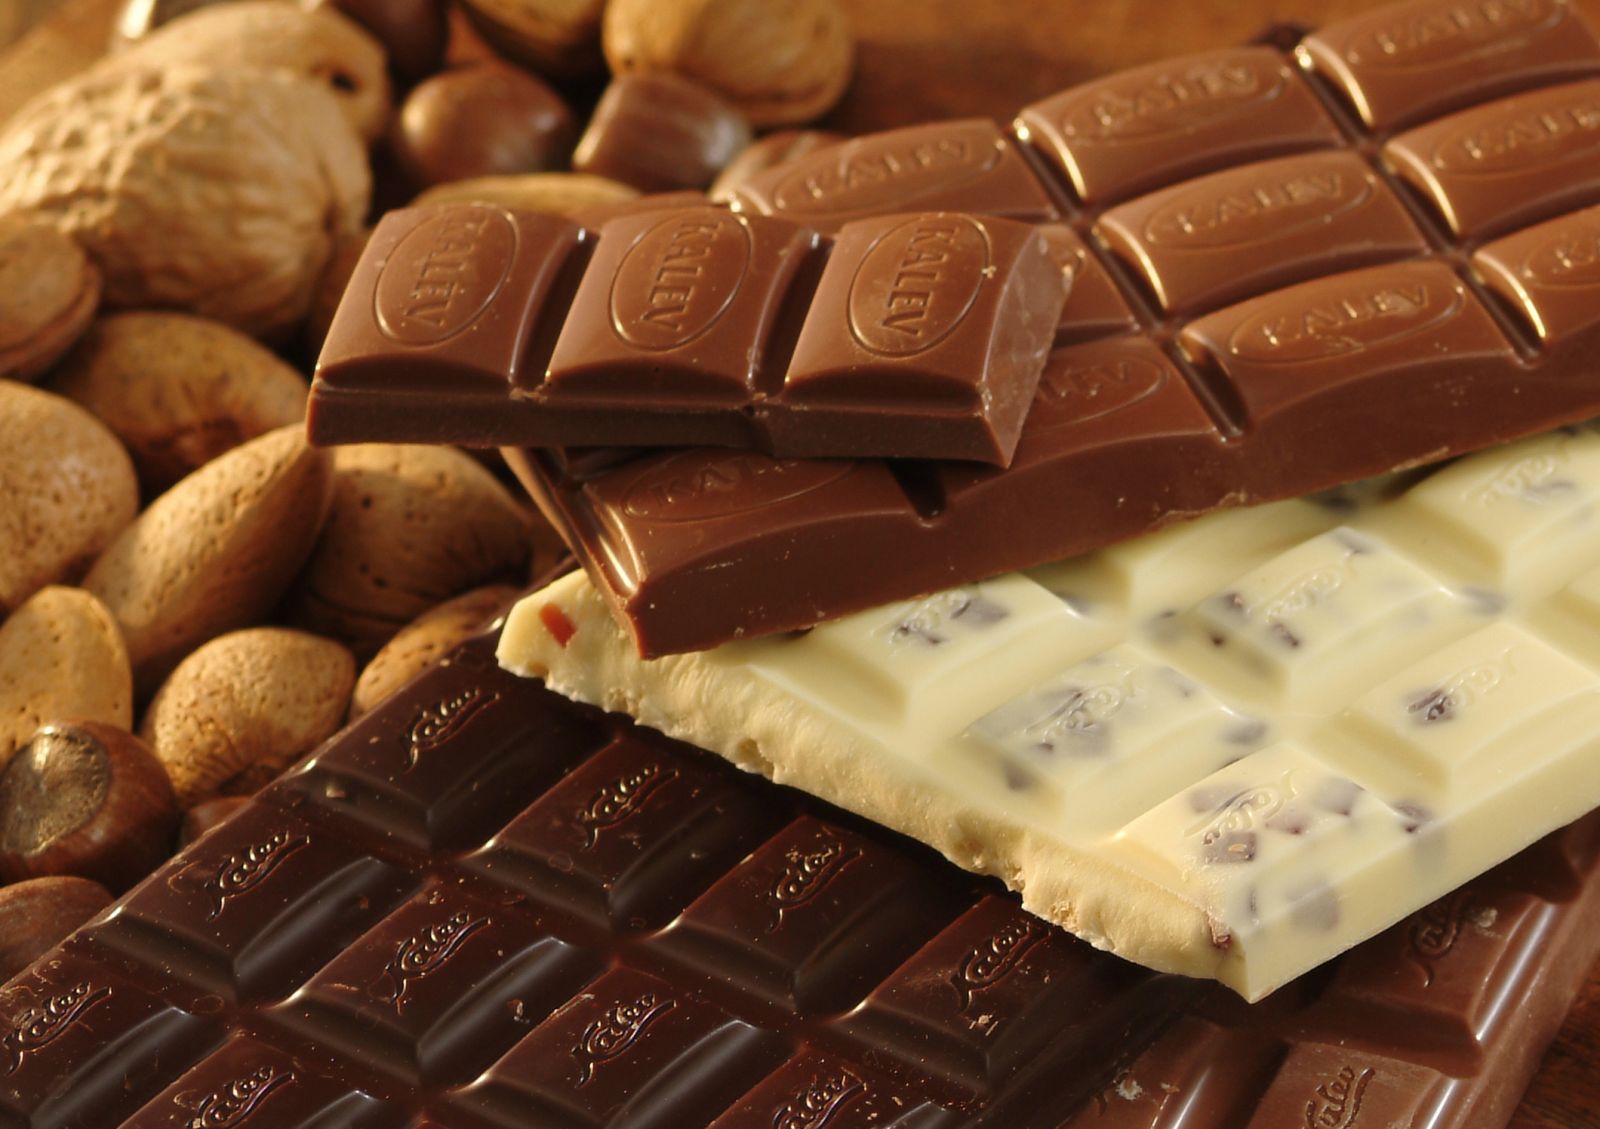 текстура, шоколад, какао, chocolate texture, скачать фото, фон, background